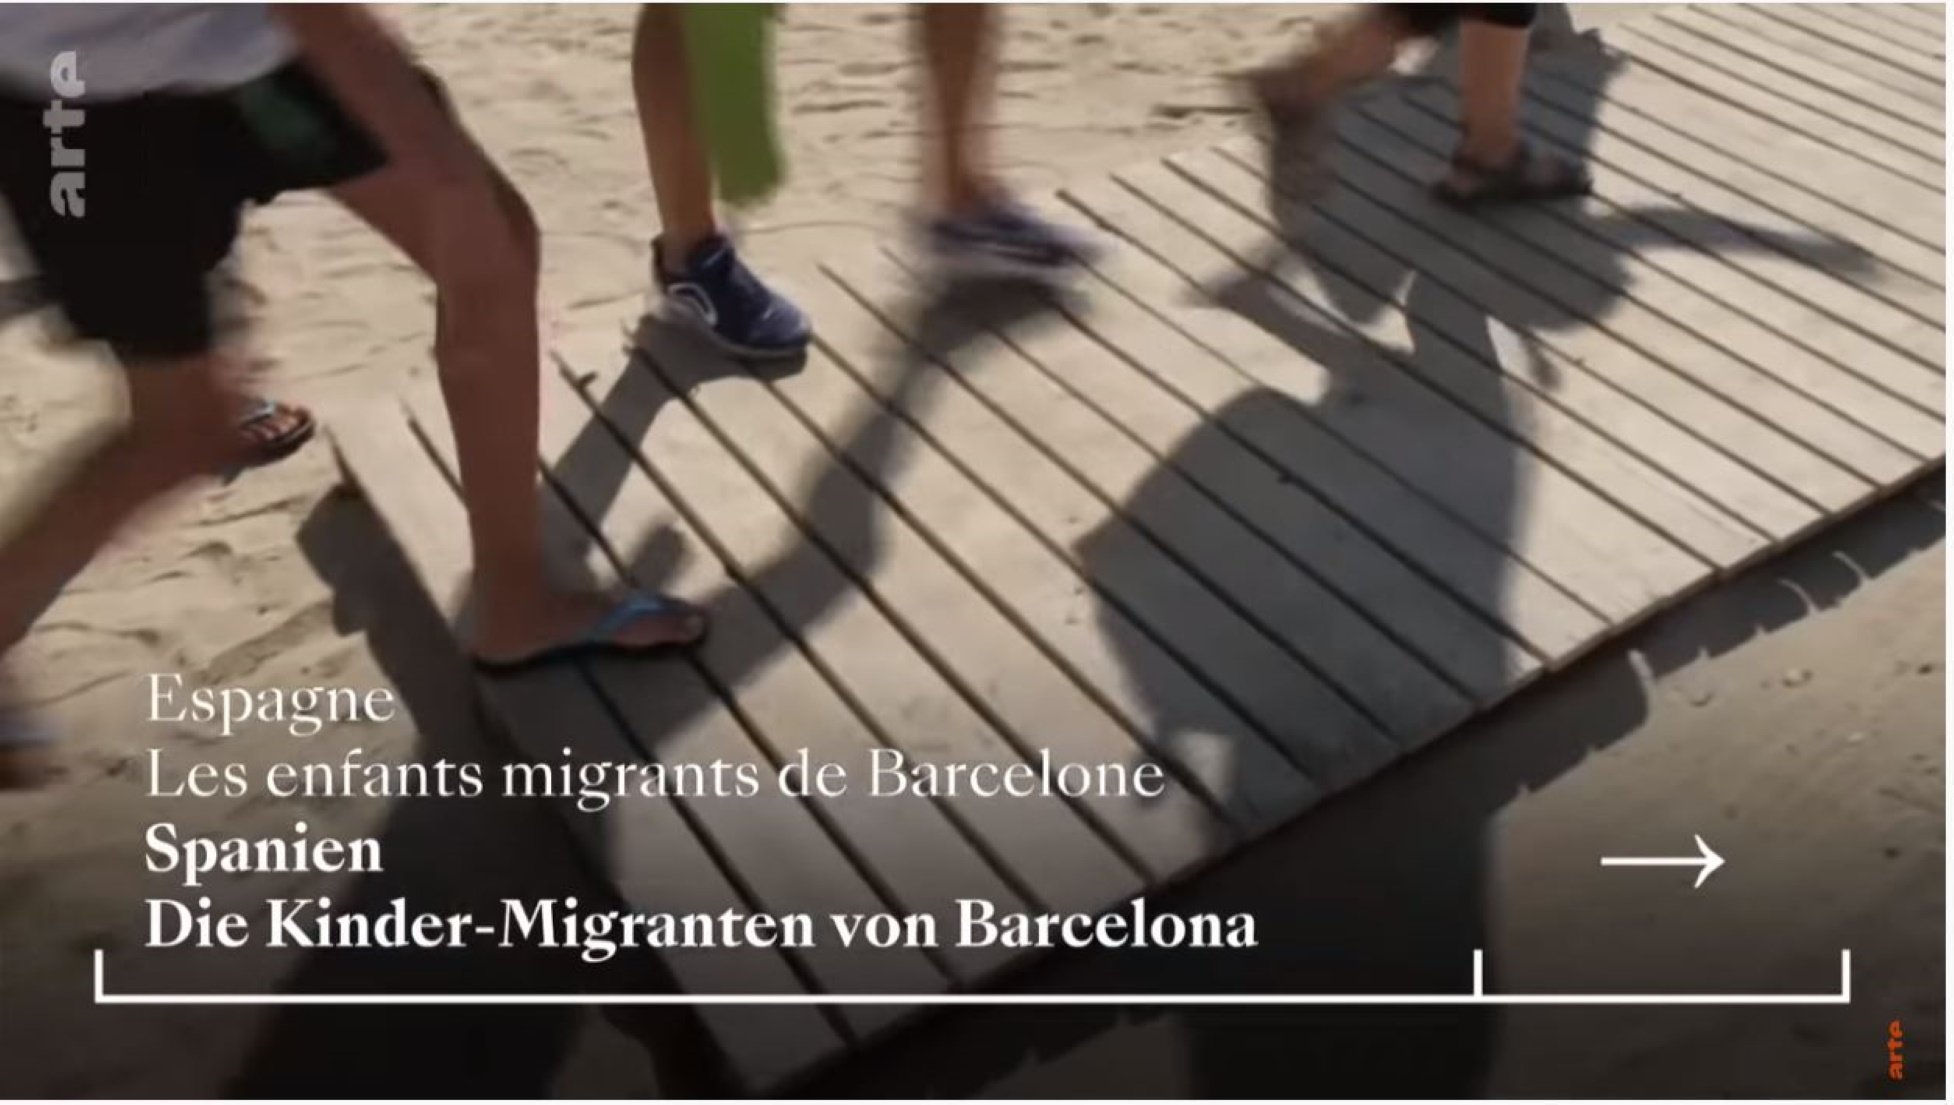 La TV franco-alemanya Arte posa Catalunya com a model europeu en un reportatge